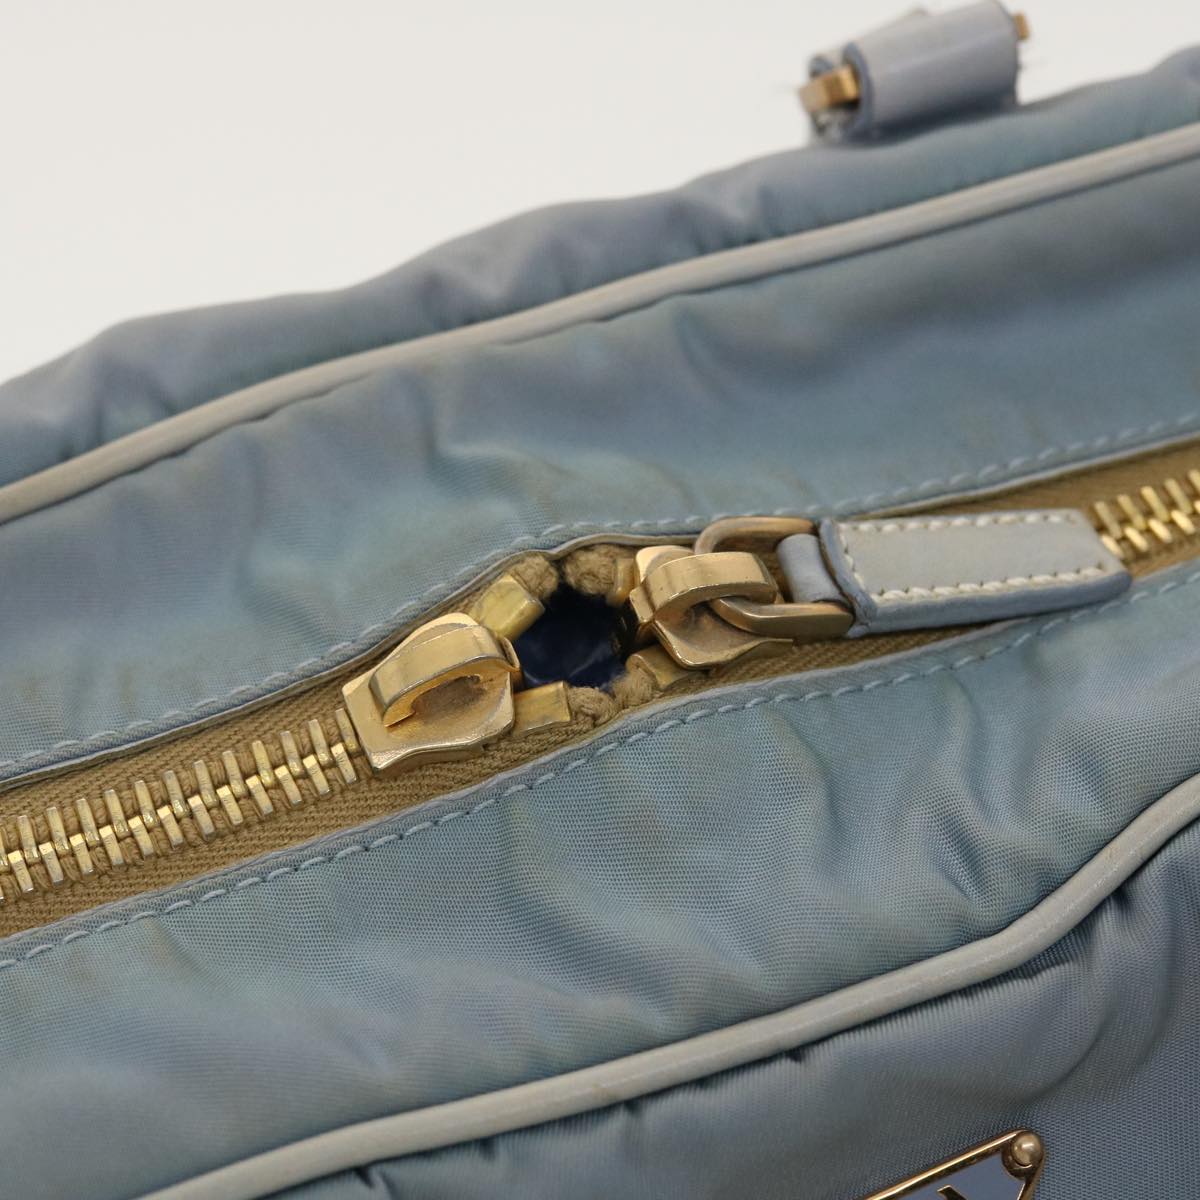 PRADA Hand Bag Nylon Light Blue Auth ar9240